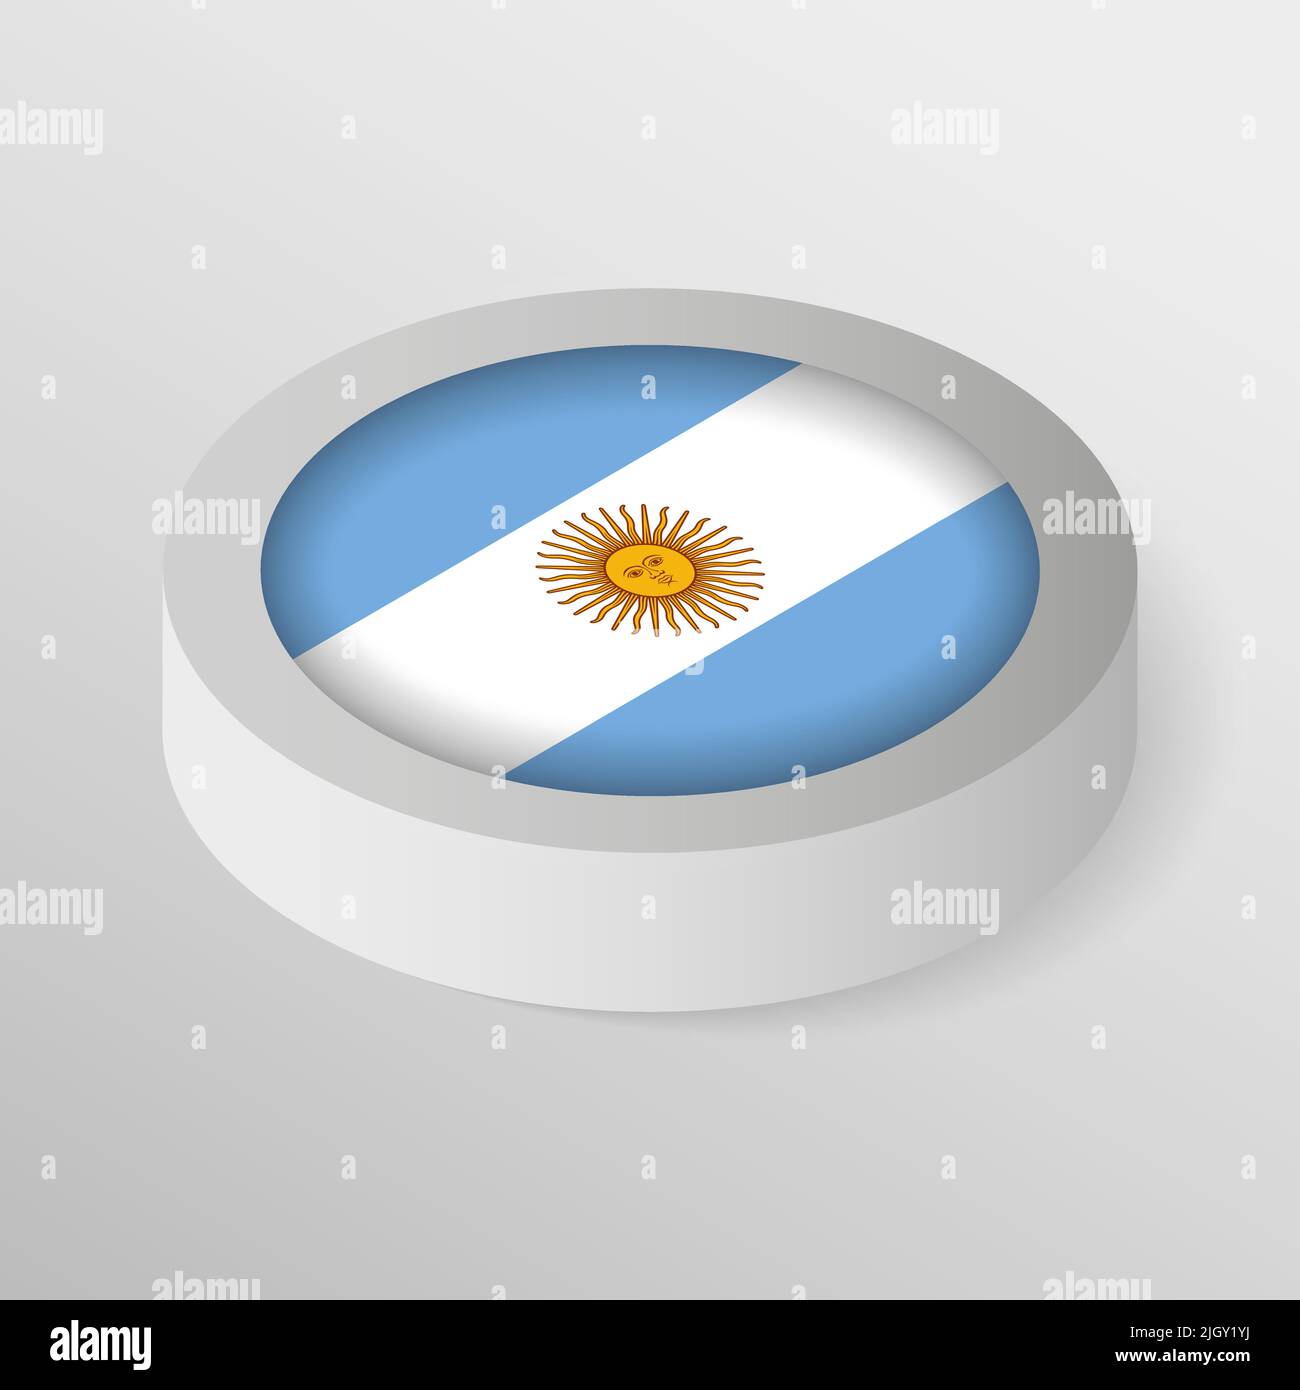 EPS10 Vektor Patriotisches Schild mit Flagge Argentiniens. Ein Element der Wirkung für die Verwendung, die Sie daraus machen möchten. Stock Vektor